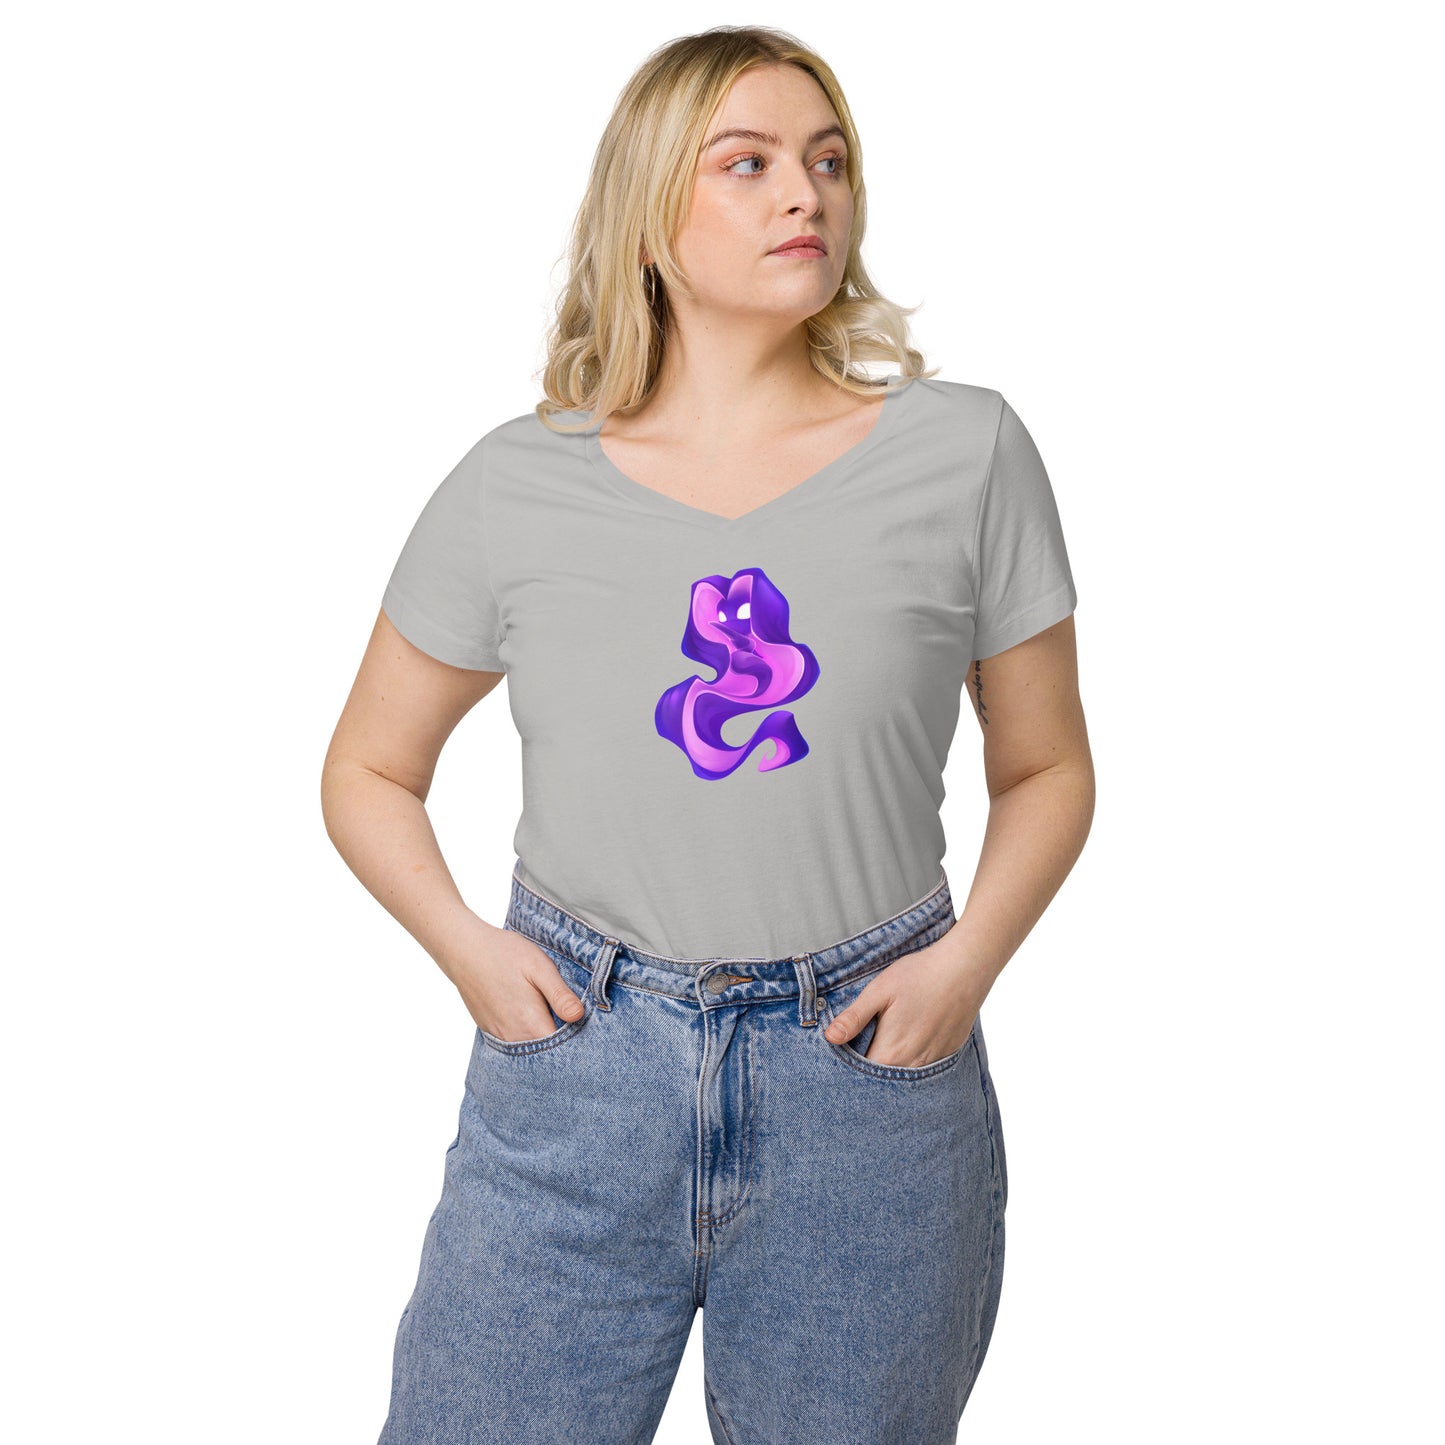 Women’s fitted v-neck t-shirt: Cozma